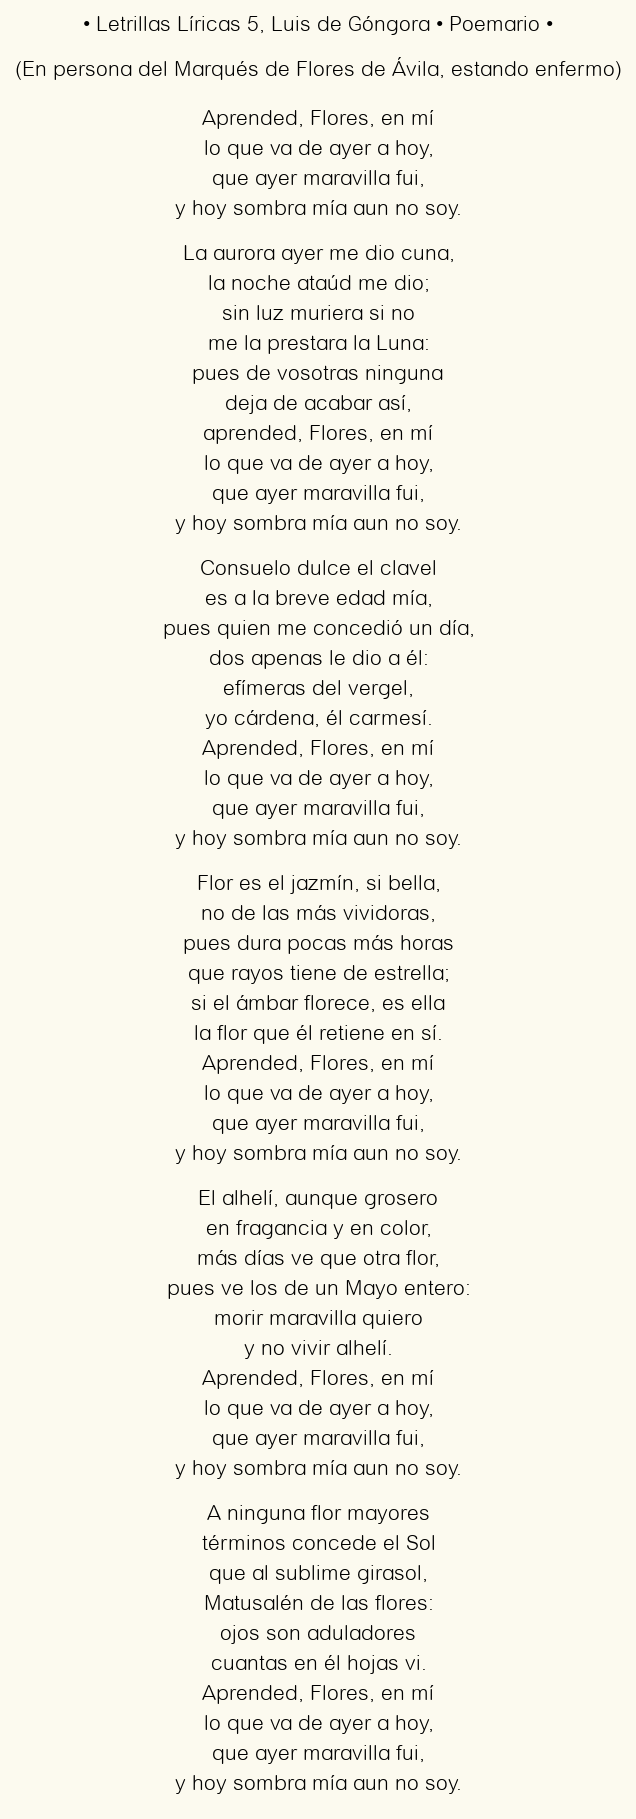 Imagen con el poema Letrillas Líricas 5, por Luis de Góngora